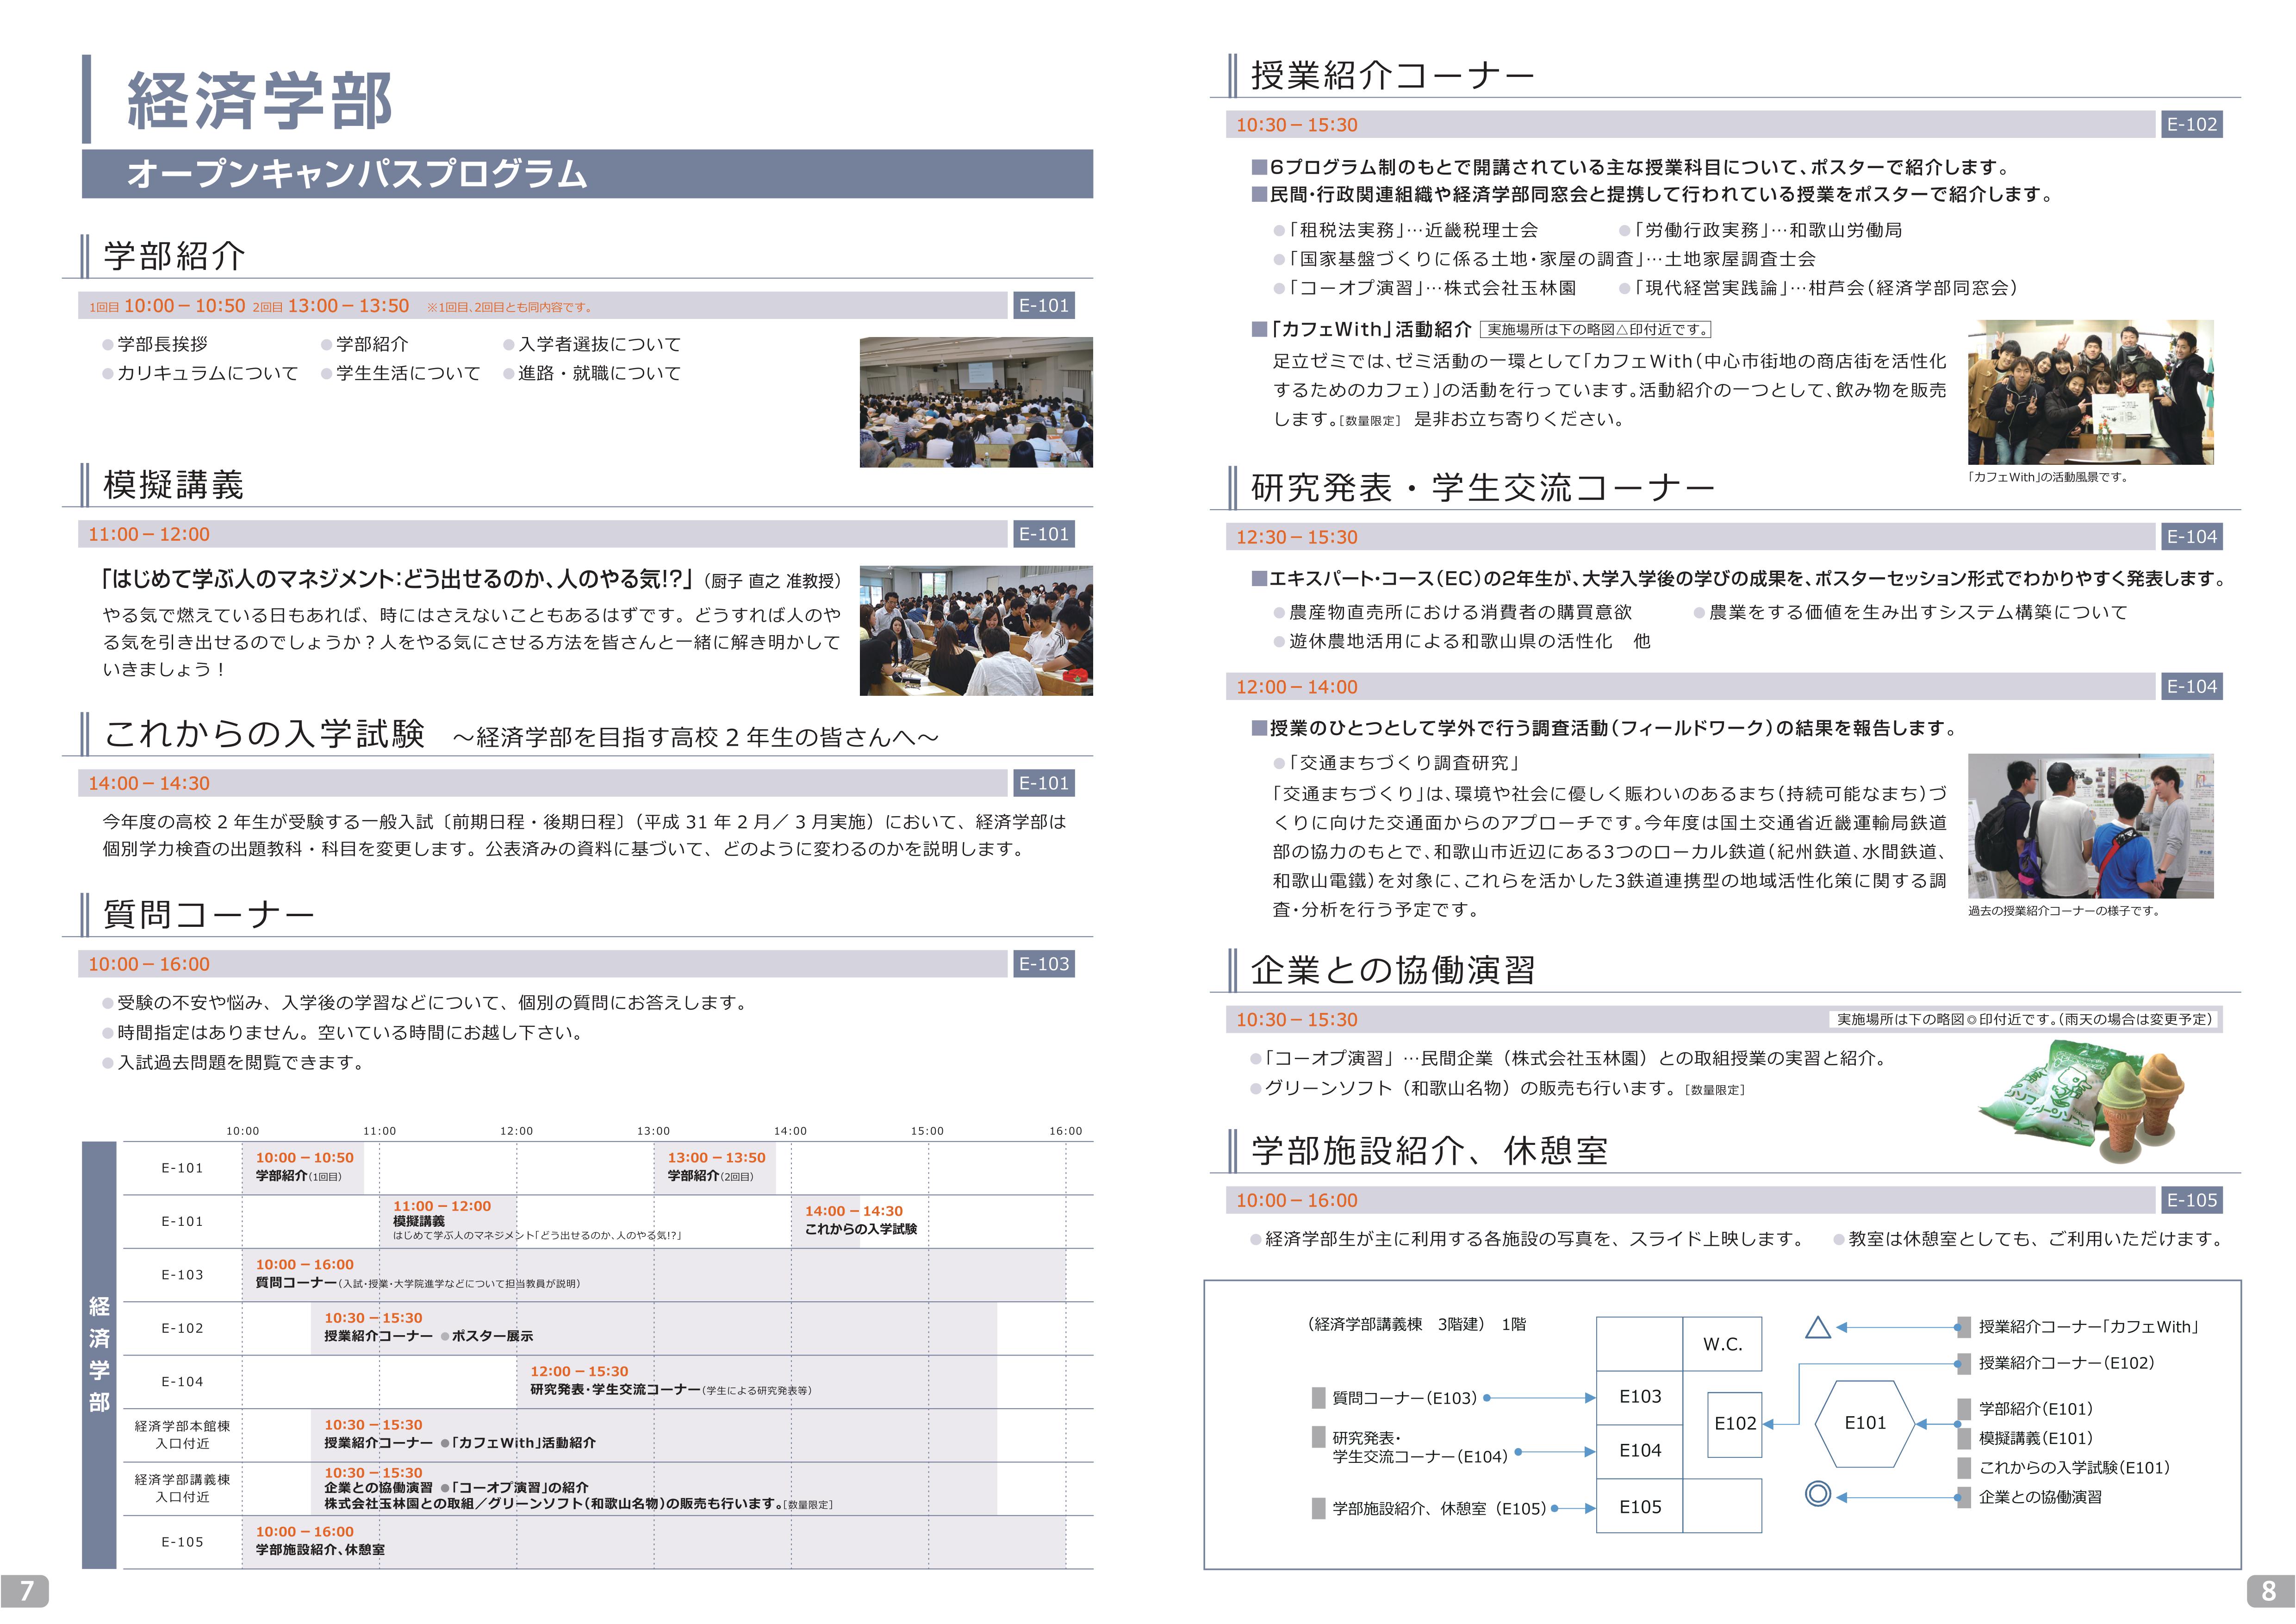 http://www.wakayama-u.ac.jp/blog/wadai_scope/files/ws-admin/%E7%B5%8C%E6%B8%88%E8%A6%8B%E9%96%8B%E3%81%8D.jpg